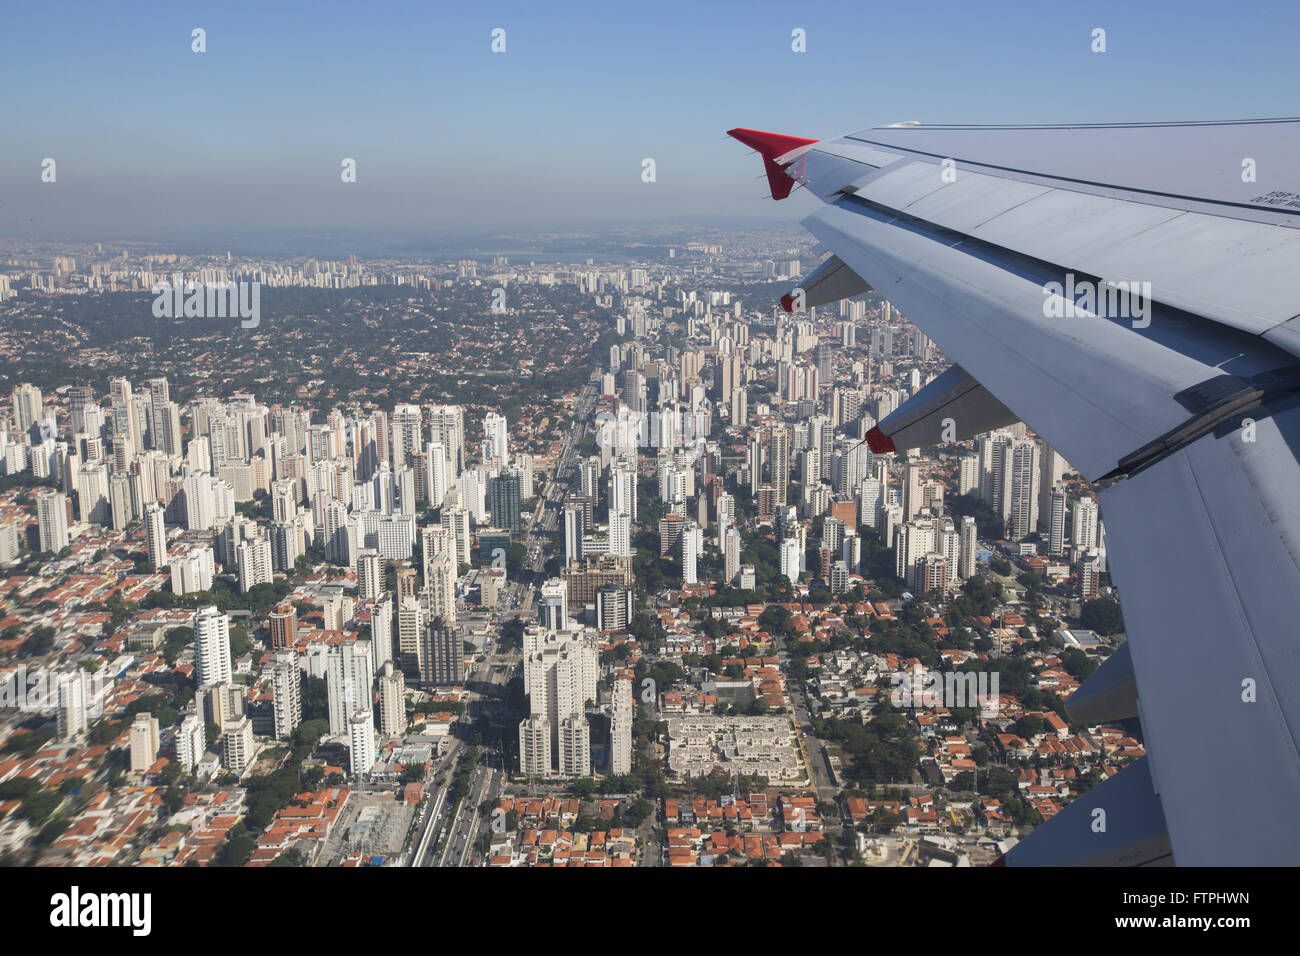 Détail de l'aile des avions volant dans la région de Sao Paulo - l'aéroport international de Congonhas Banque D'Images